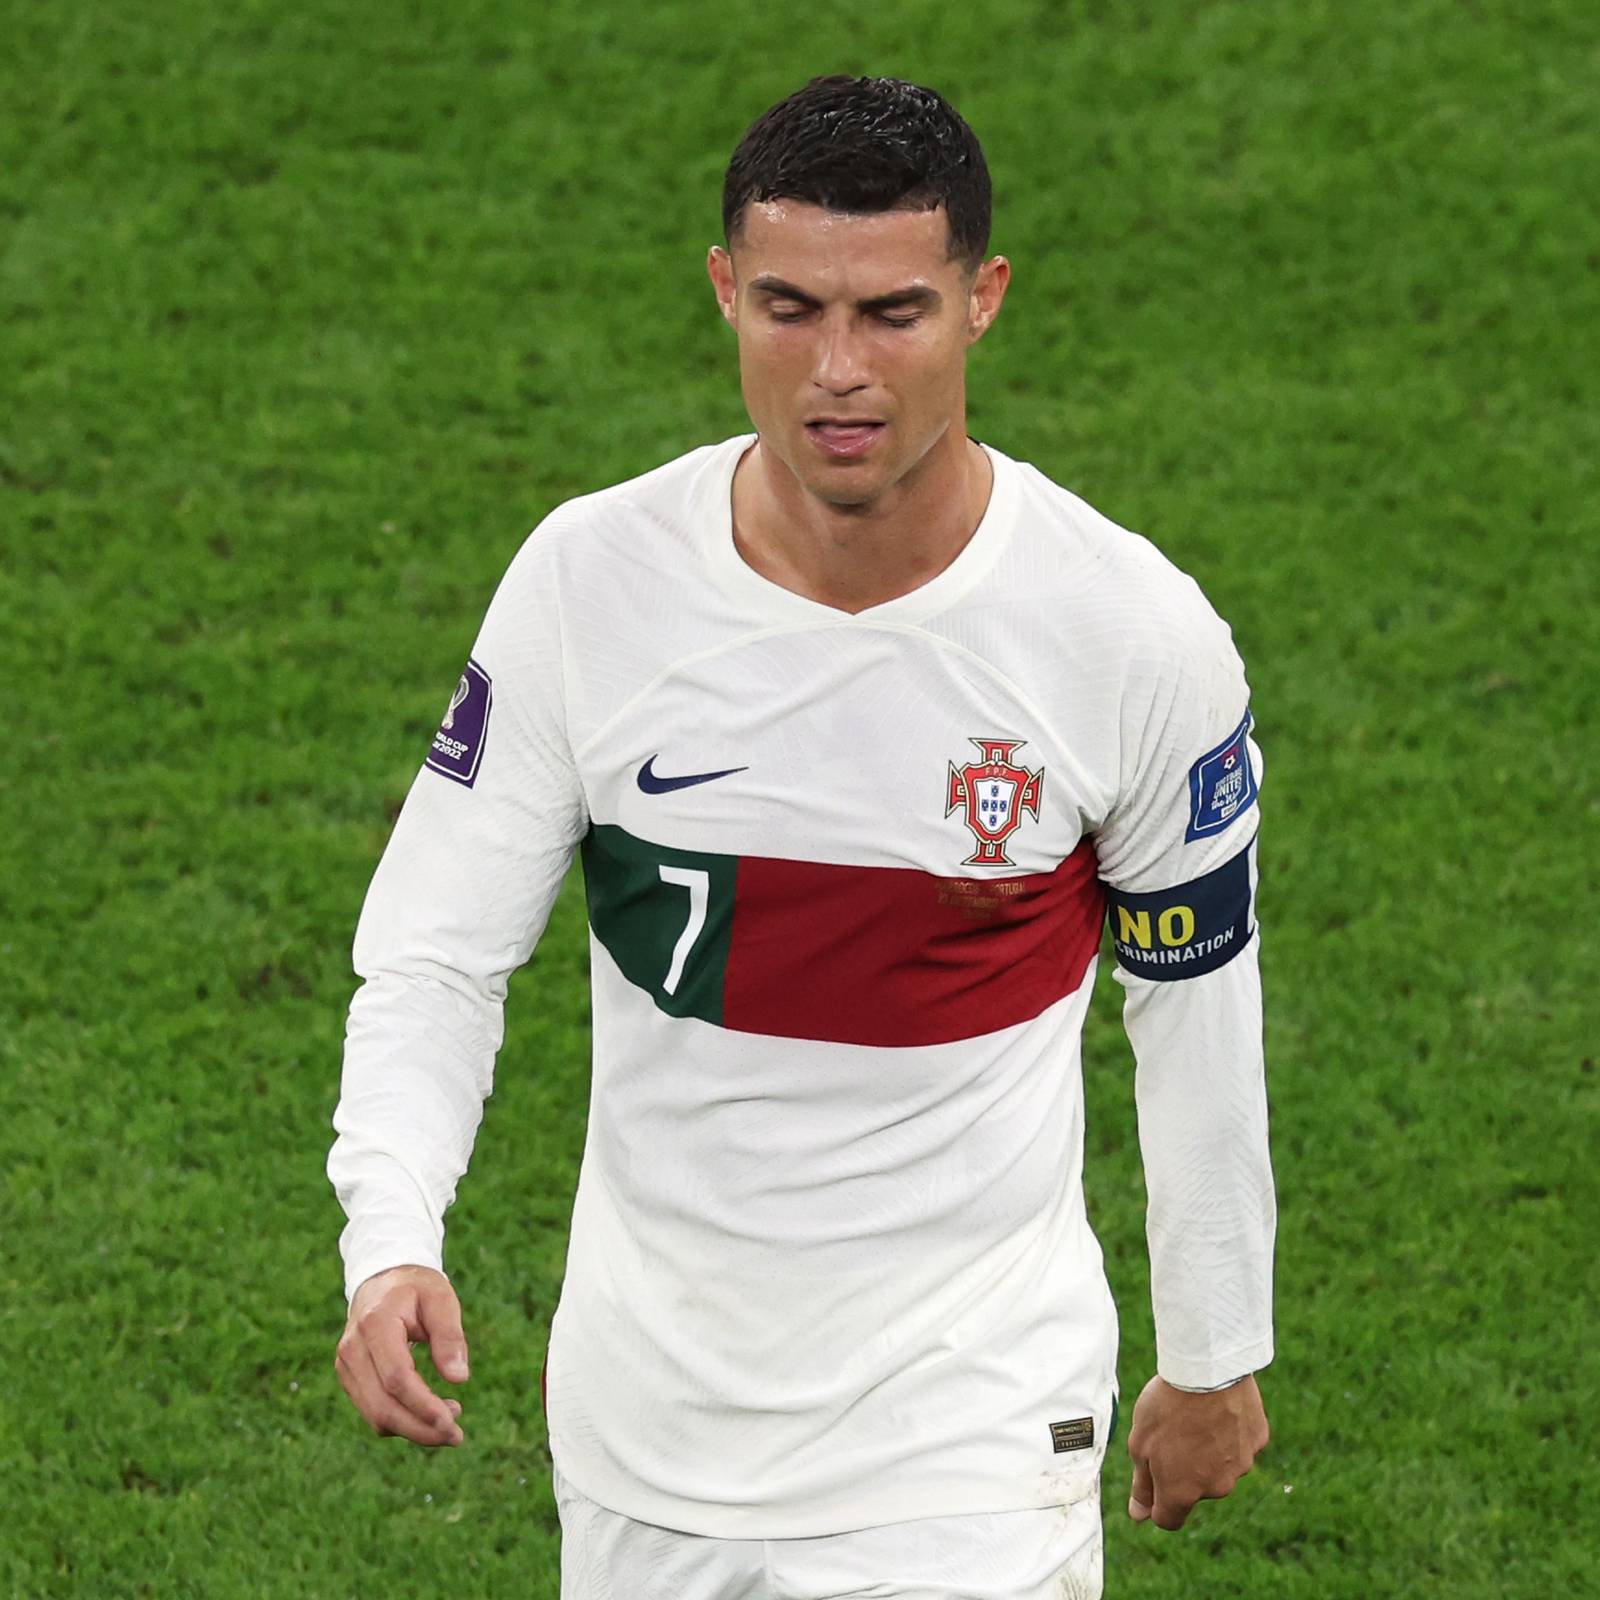 Iluminar Abreviatura Islas del pacifico Cristiano Ronaldo: “Siempre luché, nunca le daría la espalda a Portugal”